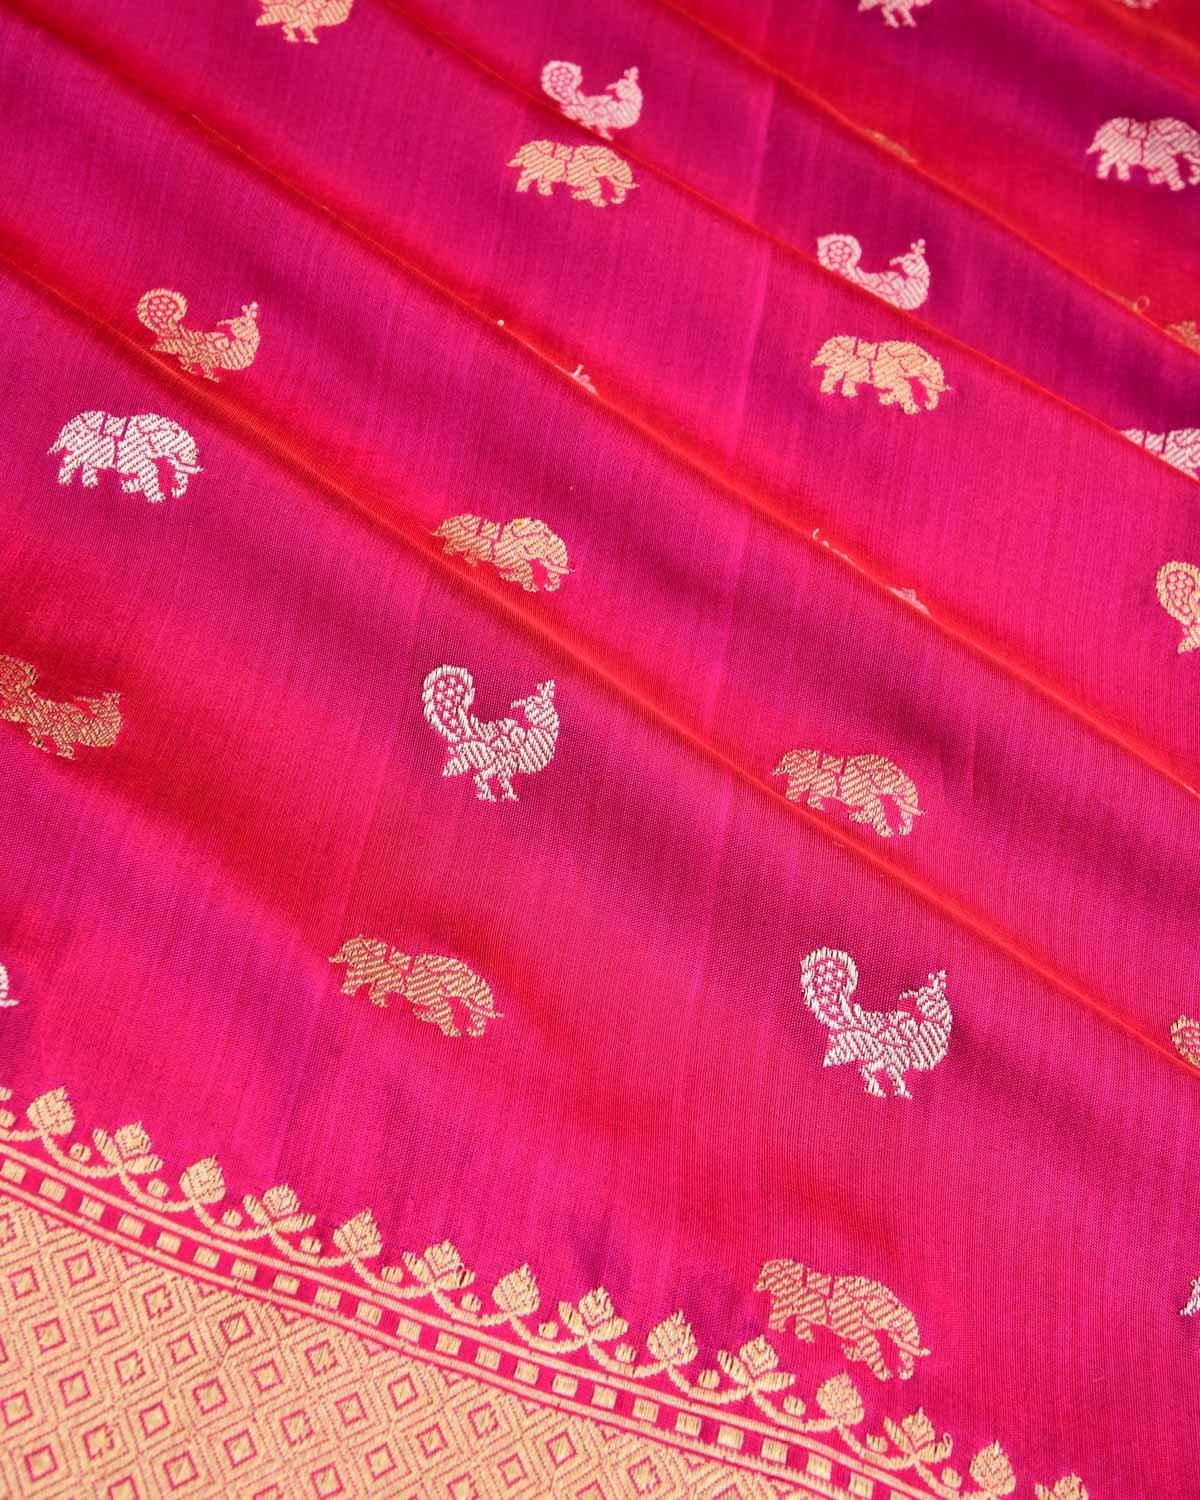 Rani Pink Banarasi Elephant & Peacock Buti Gold & Silver Zari Kadhuan Brocade Handwoven Katan Silk Saree - By HolyWeaves, Benares